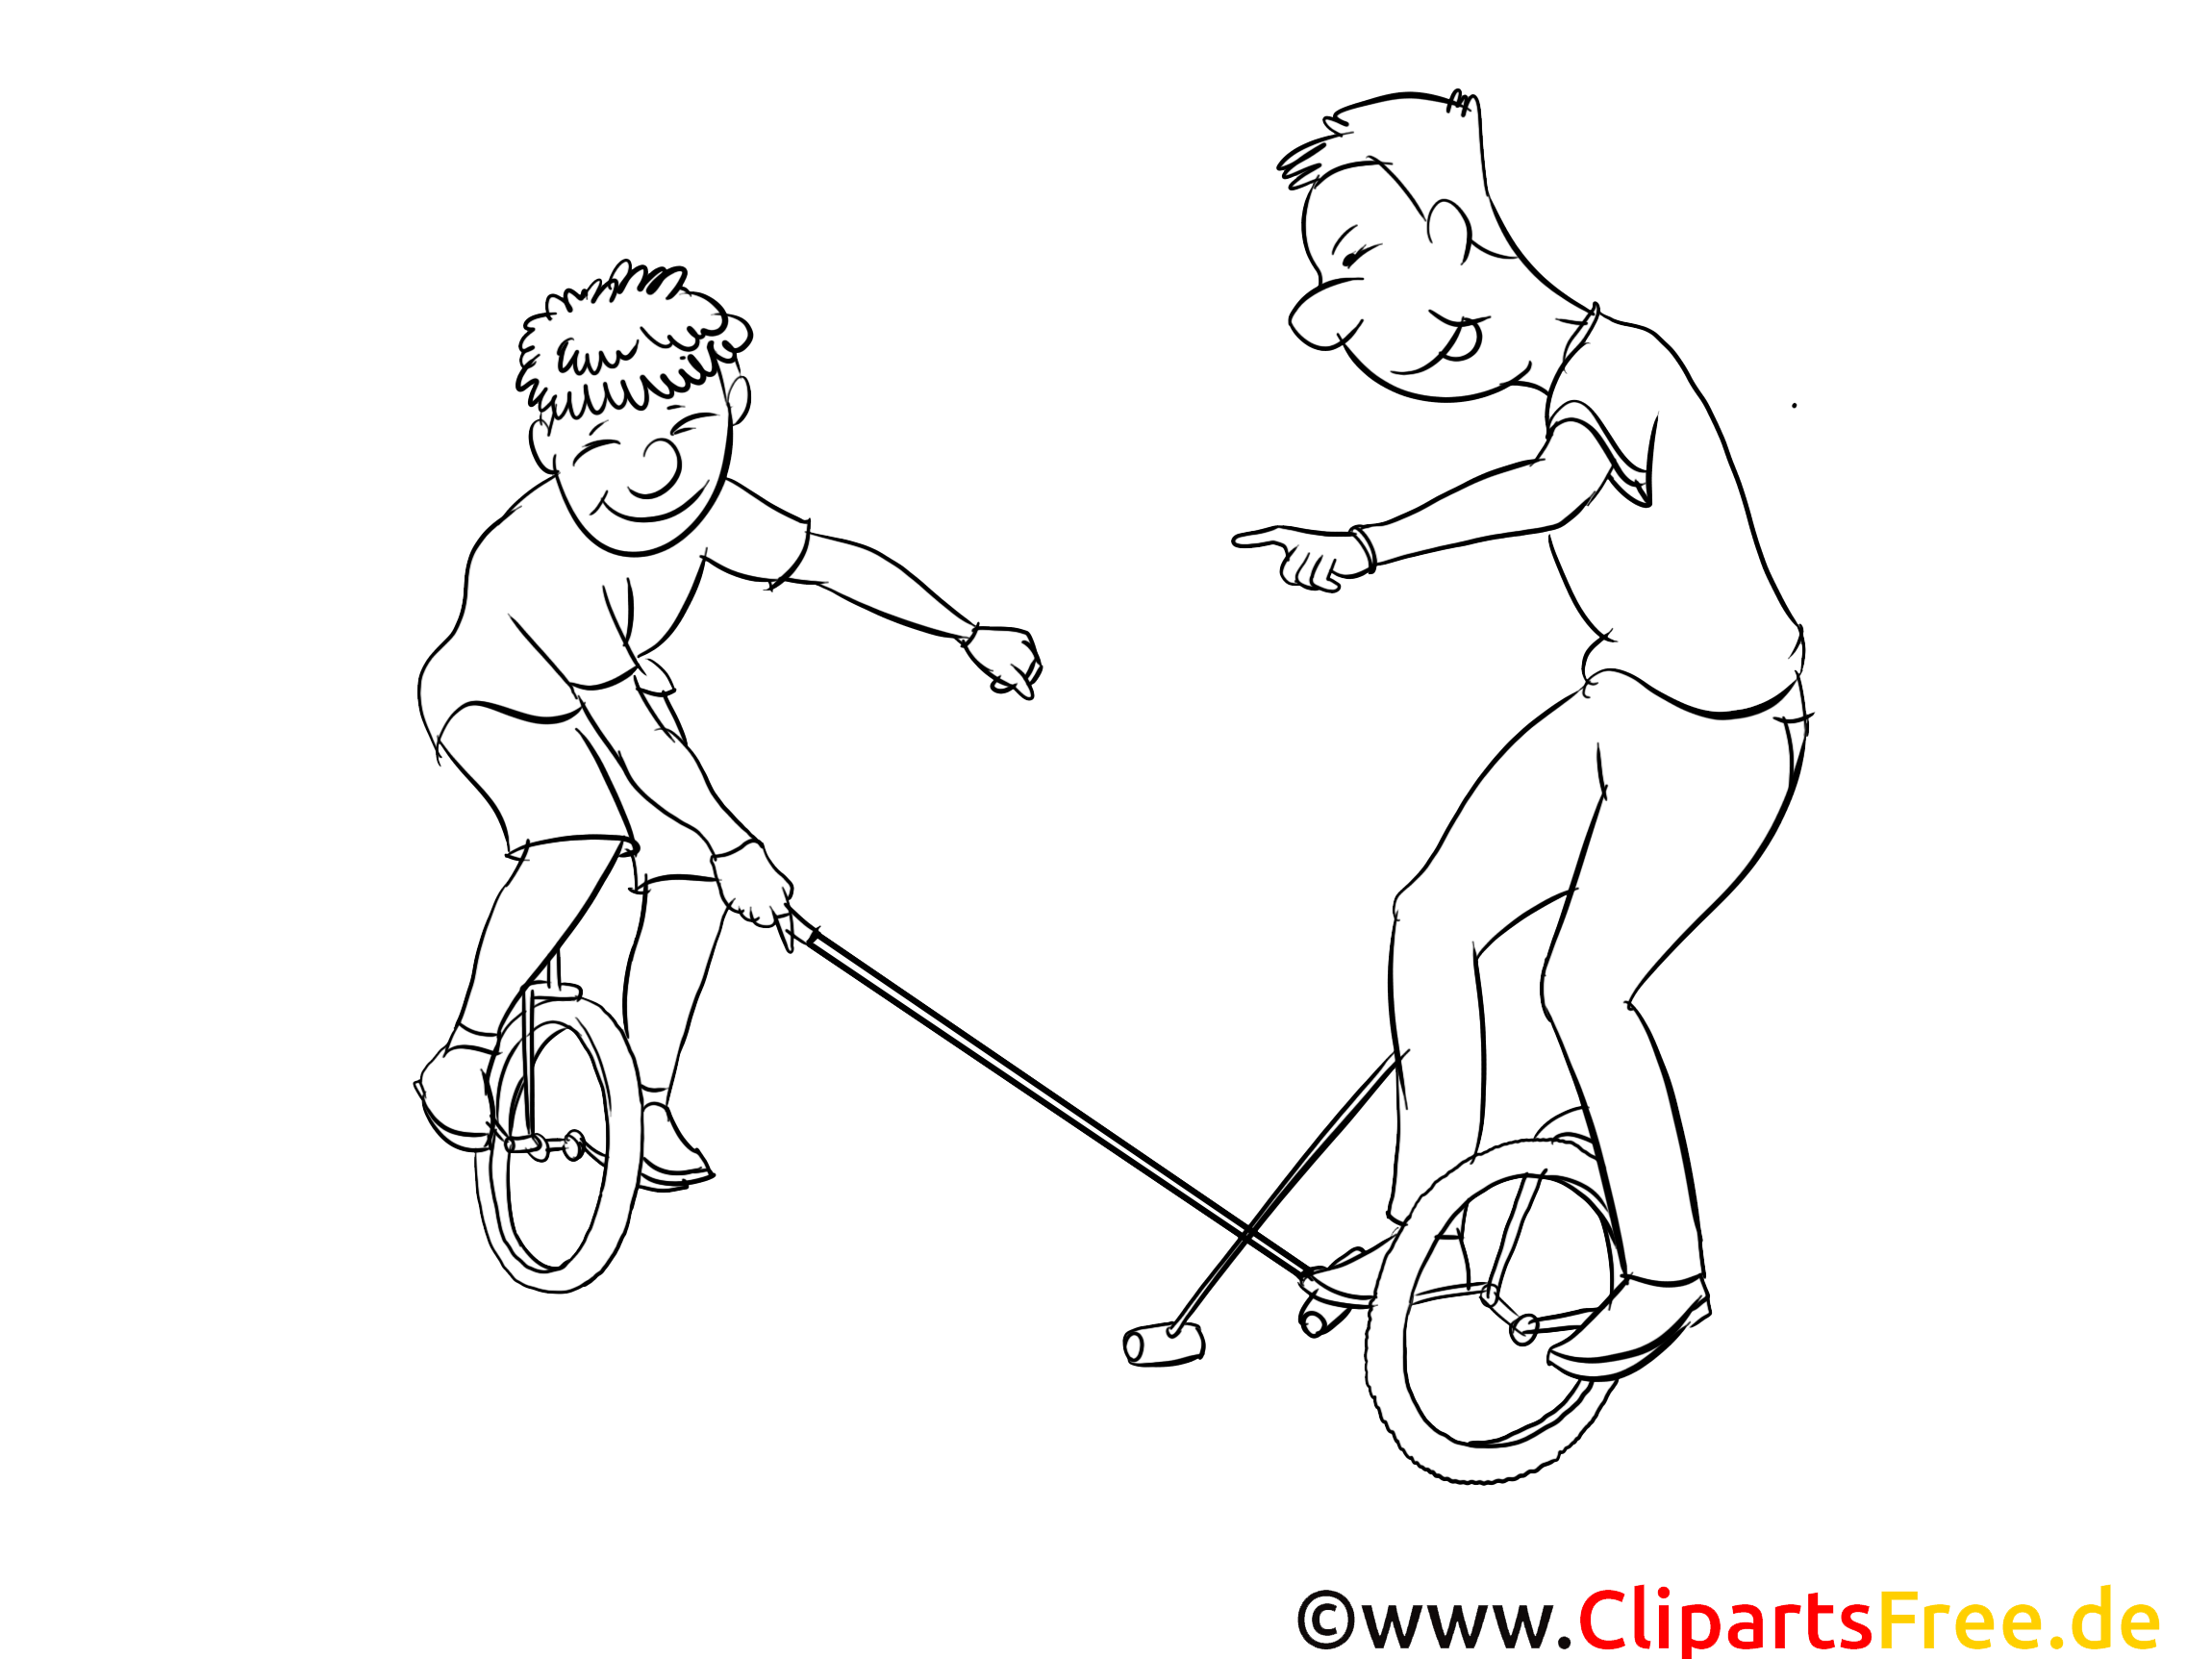 Unicycles images – Sport gratuits à imprimer